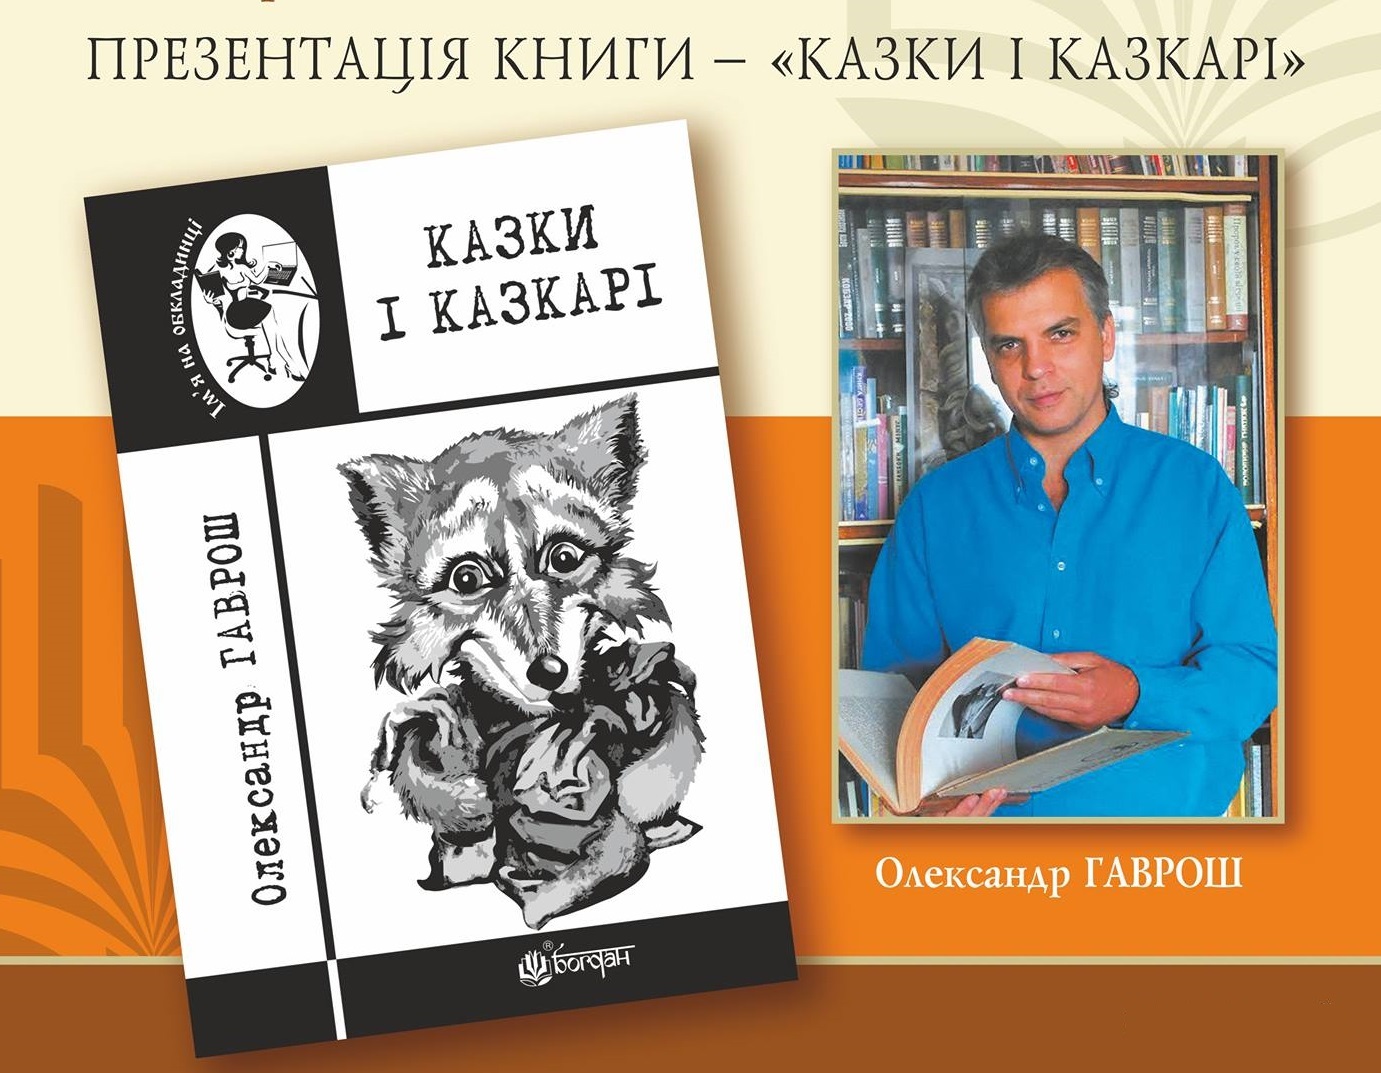 У Міжнародний день захисту дітей в Ужгороді презентують книгу О. Гавроша "Казки і казкарі"